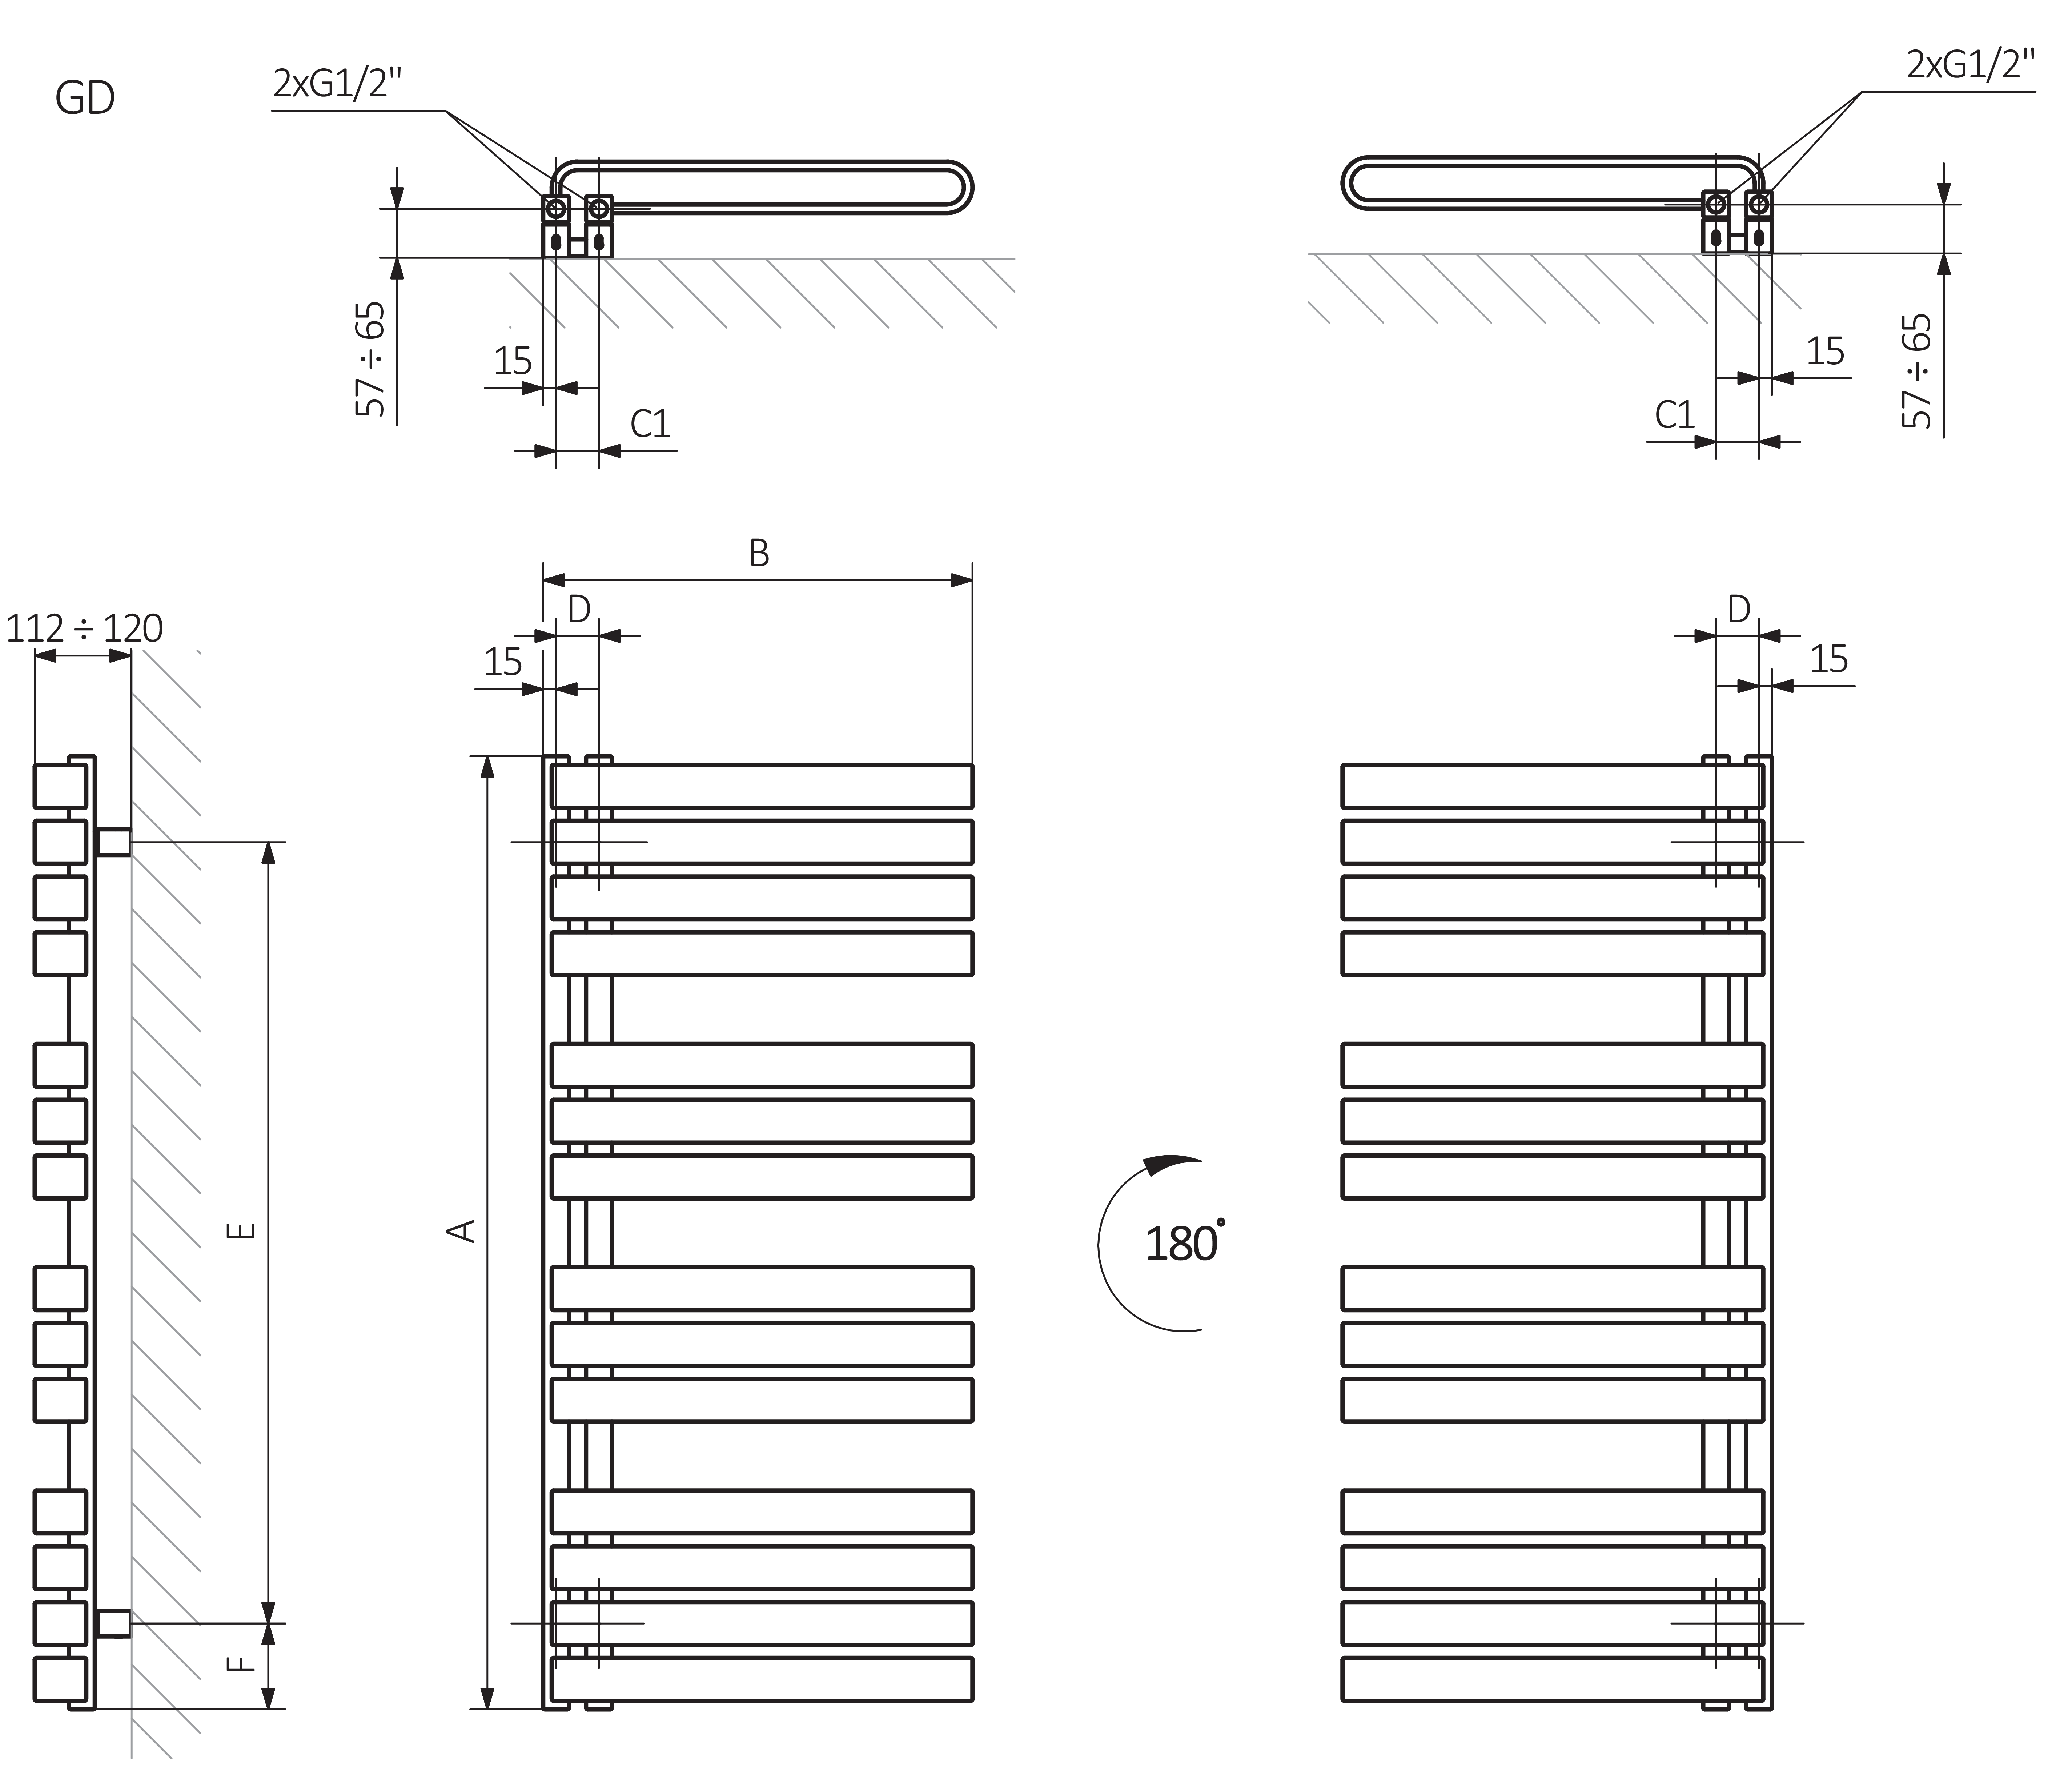 A - hauteur B - largeur C1-C5 - espacement des connexions D - distance entre les fixations à l'horizontale E - distance entre les dispositifs en F verticale - distance entre l'axe inférieur des fixations et le bord inférieur du collecteur